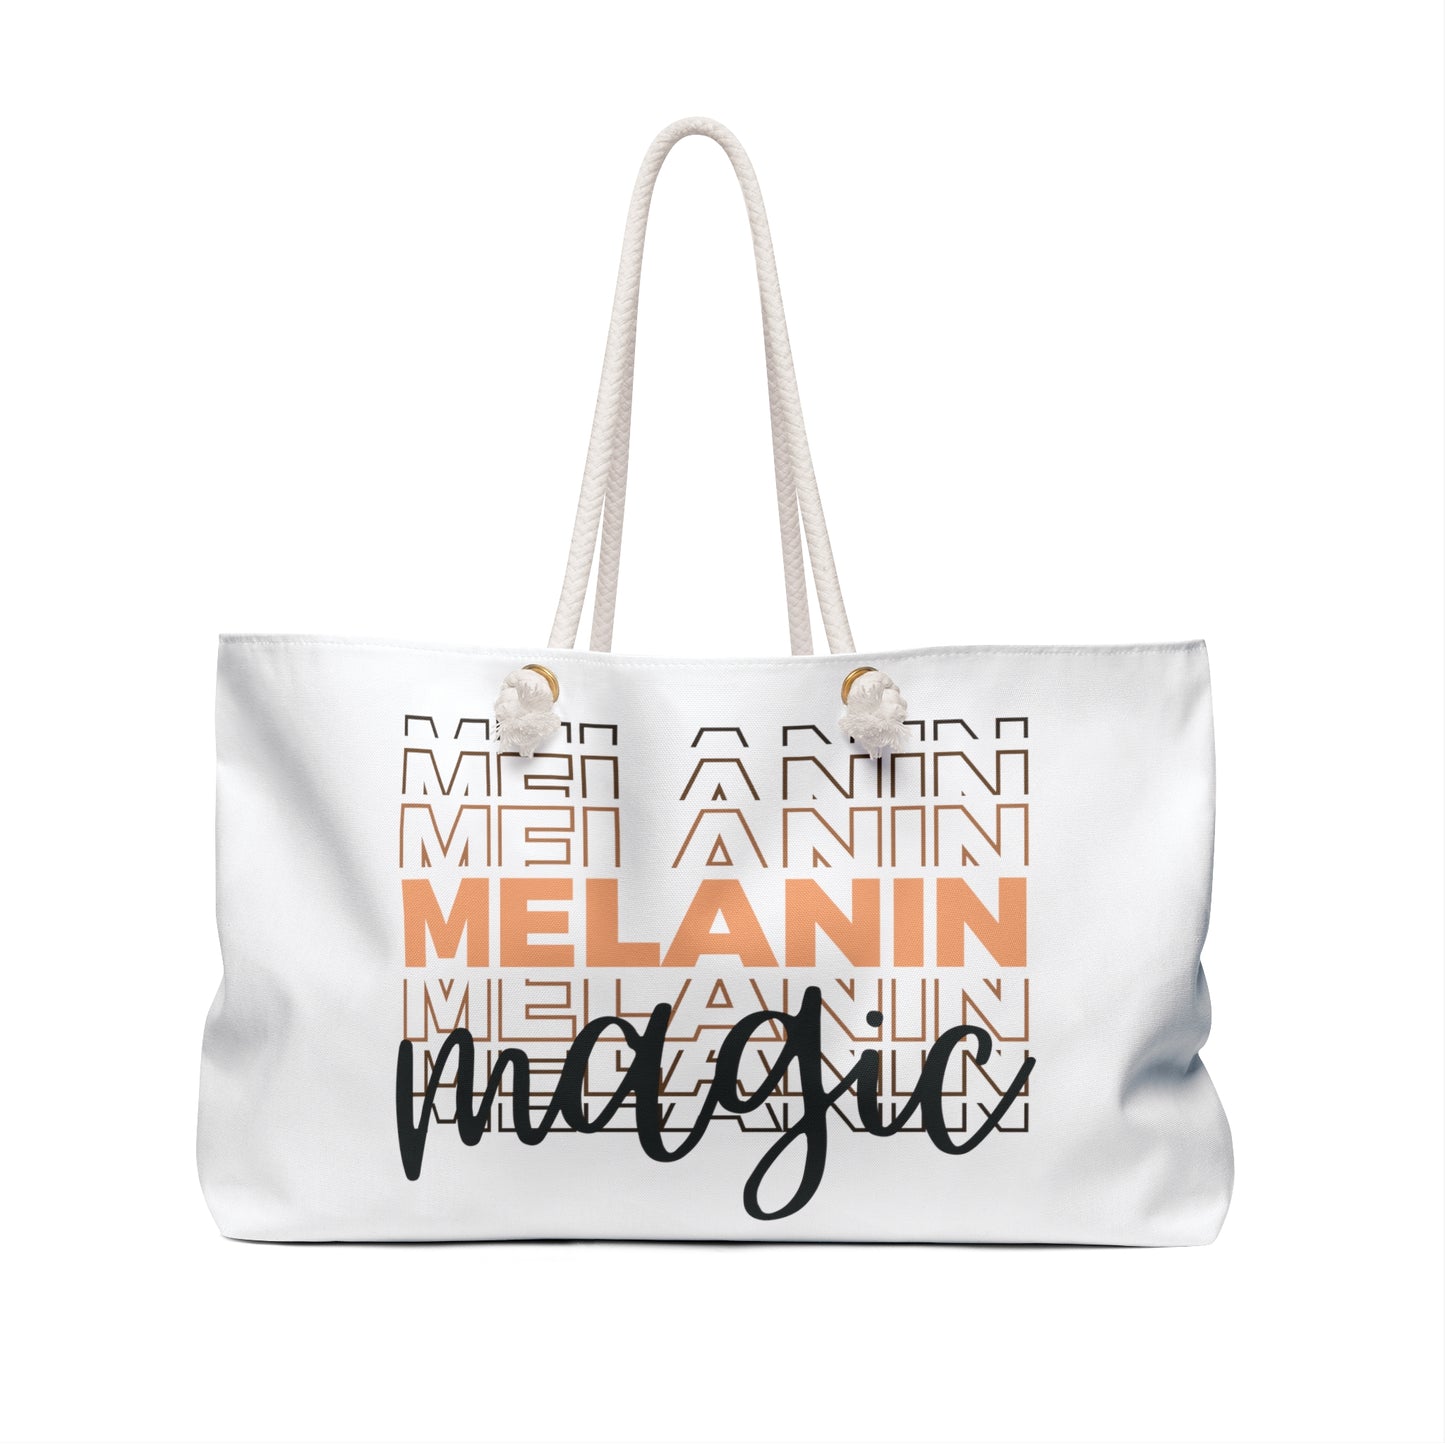 Melanin Magic Weekender Tote Bag